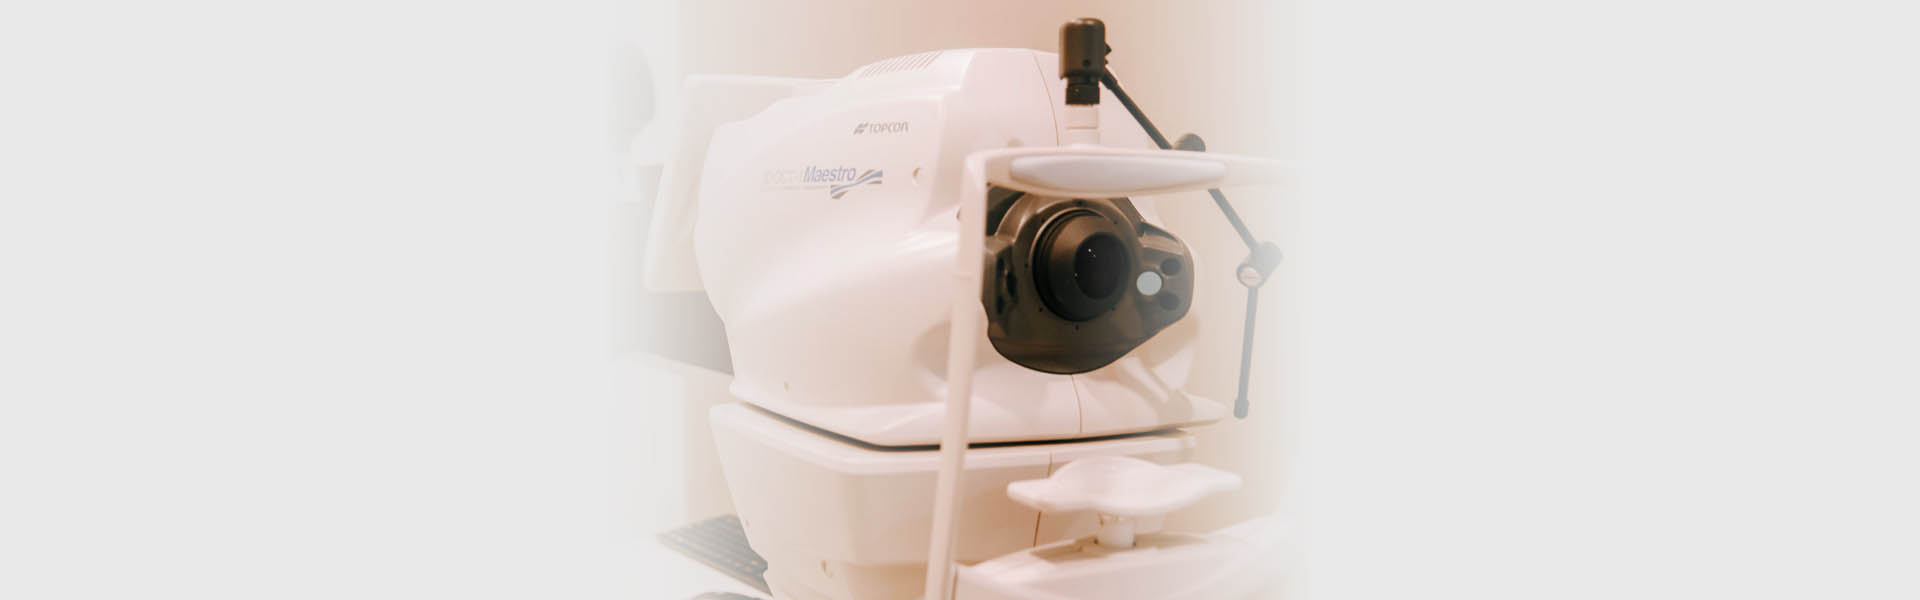 Retinal Imaging Examinations in Edmonton, AB